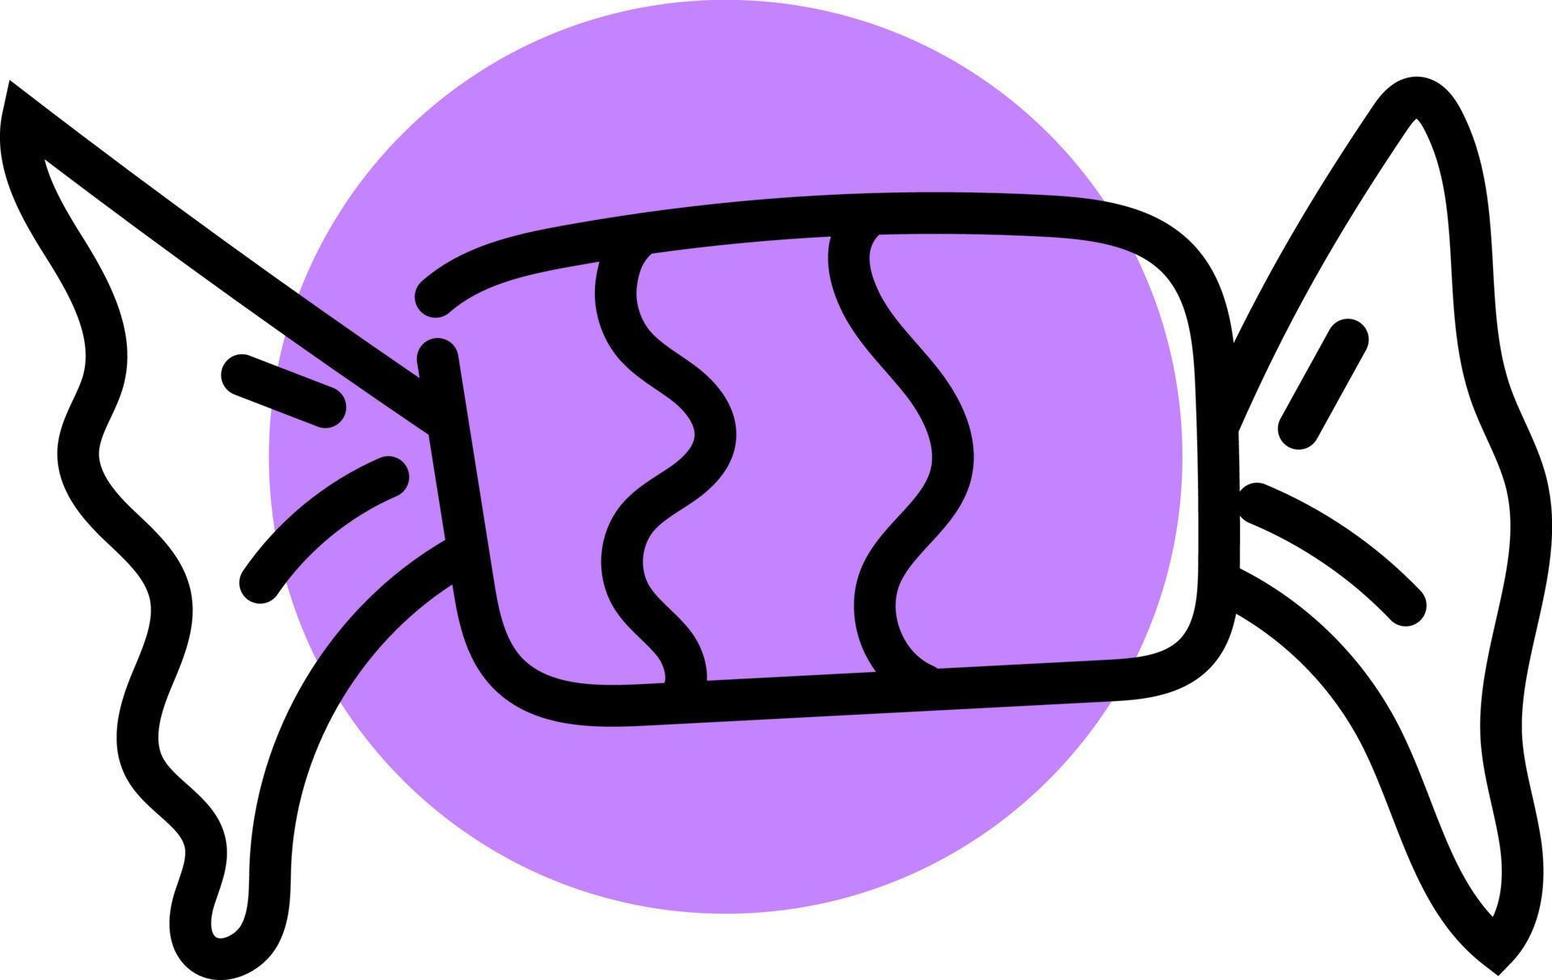 Bonbons au caramel violet, illustration, vecteur sur fond blanc